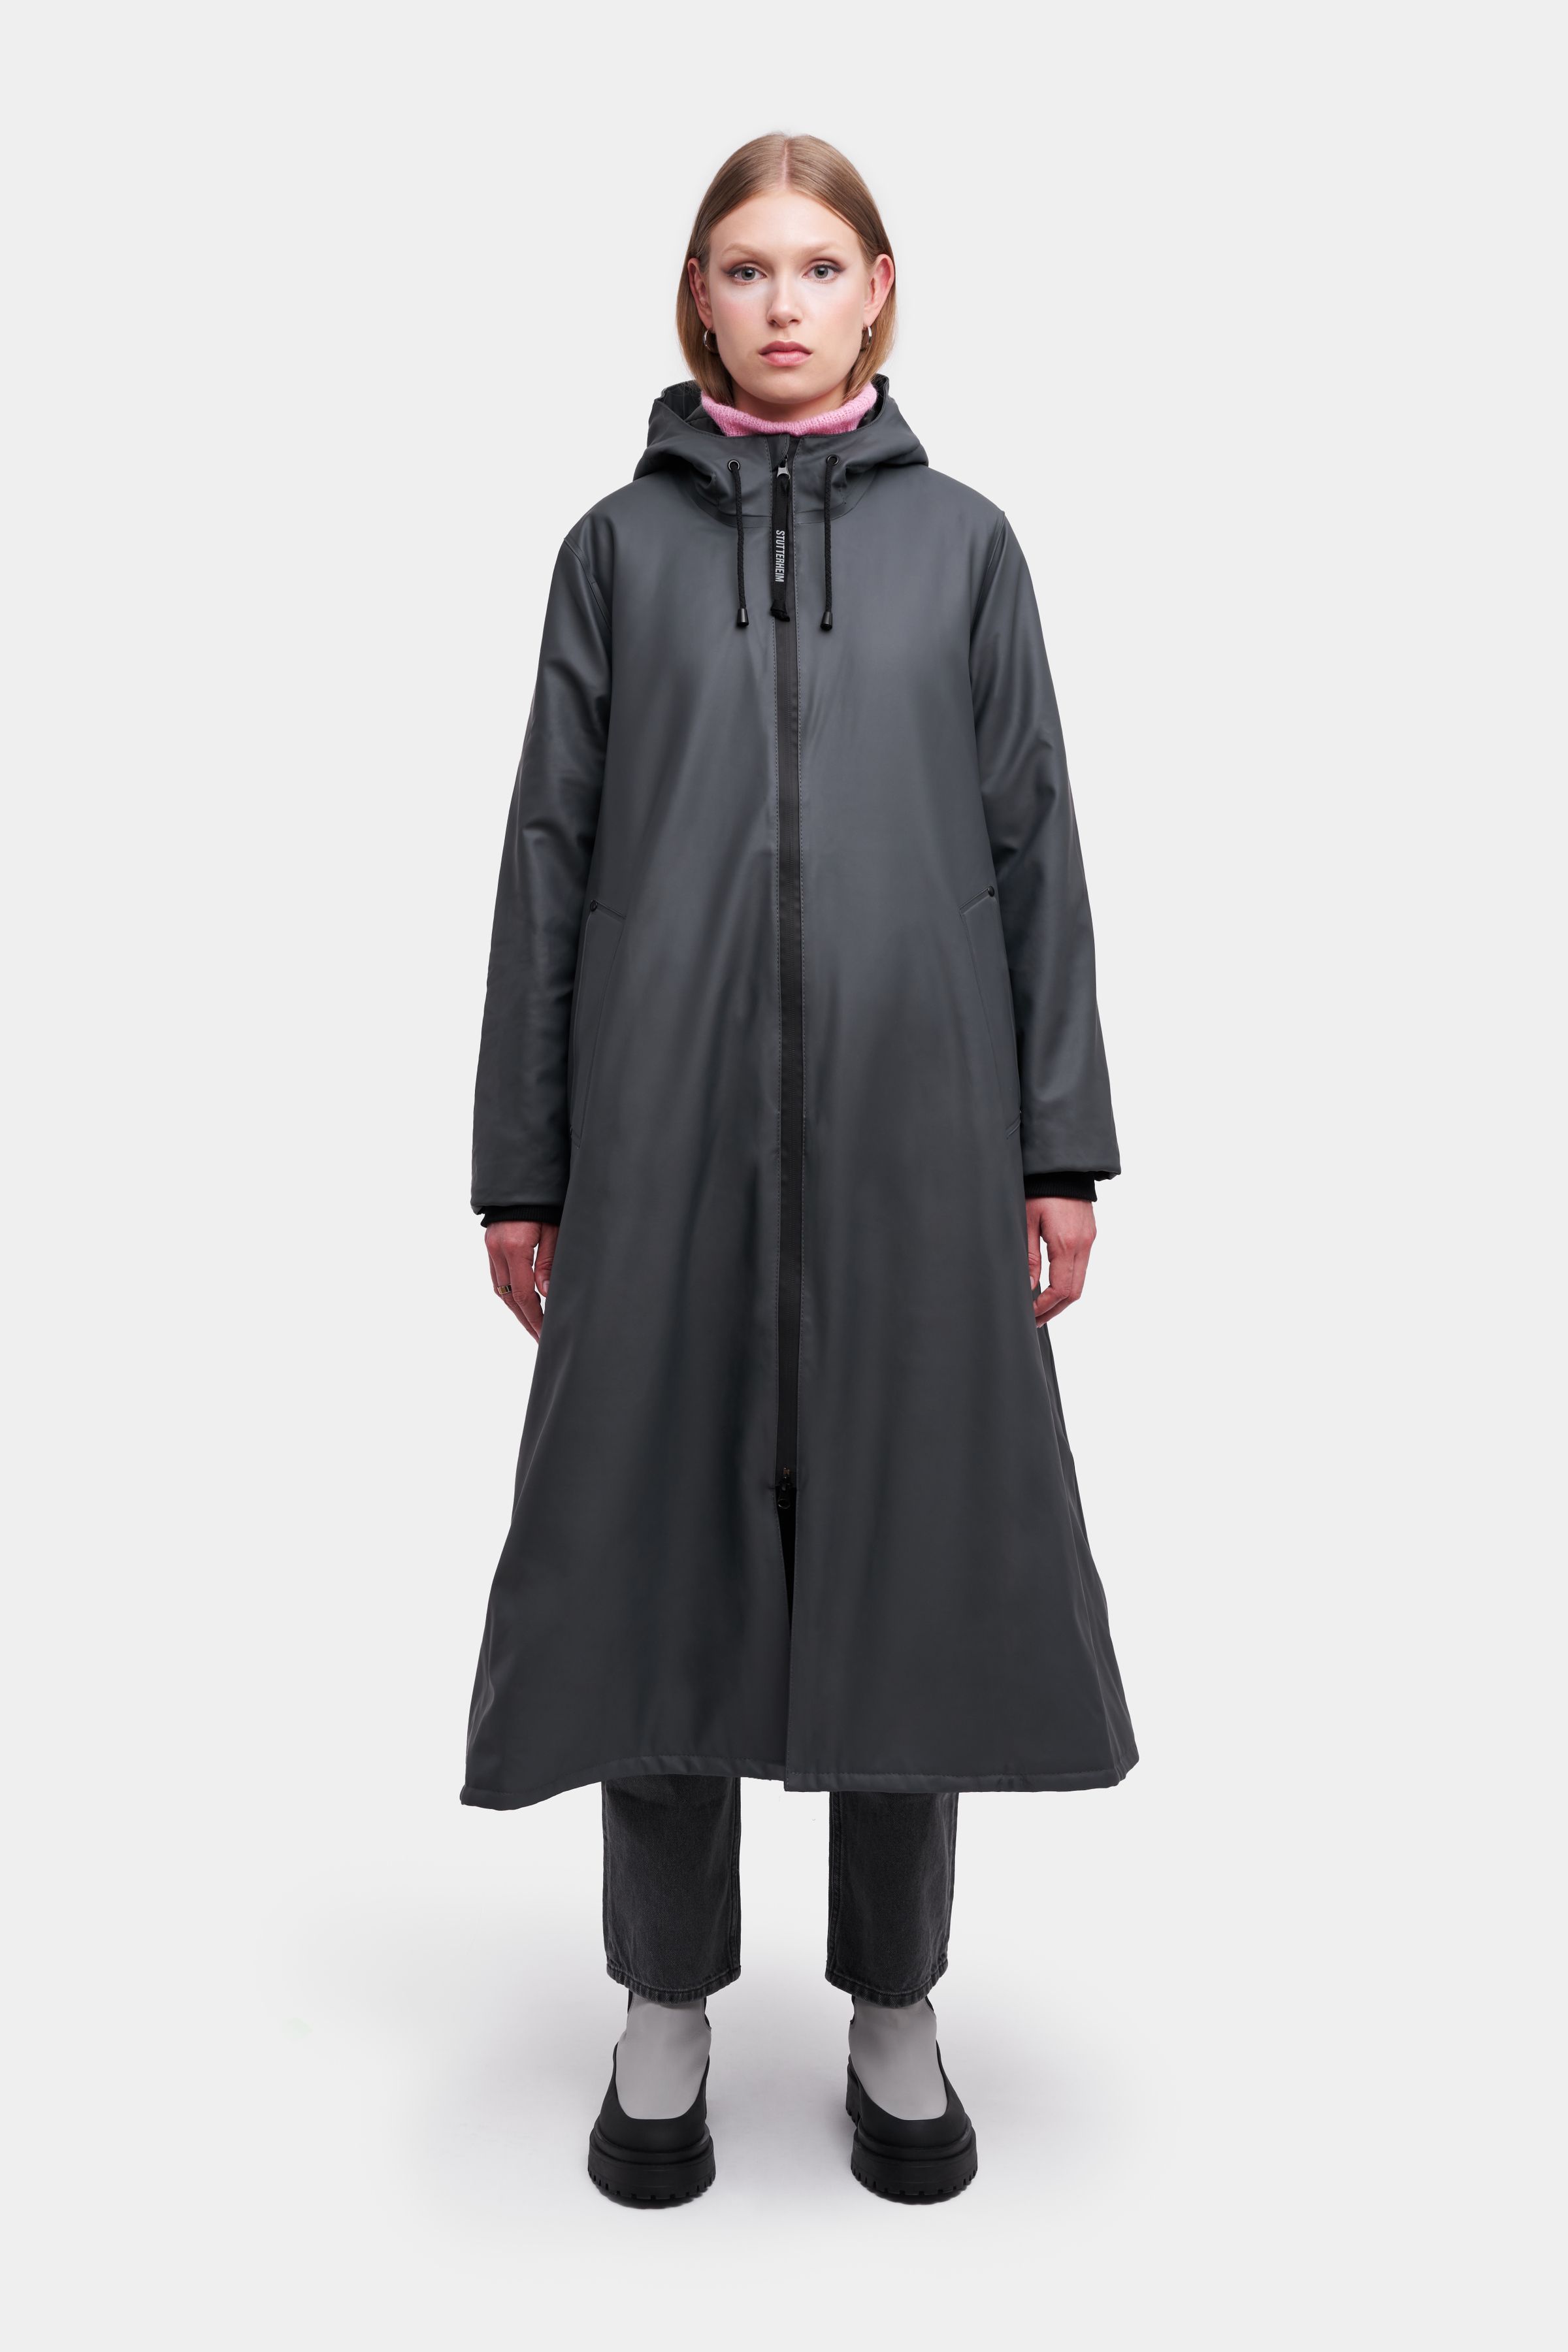 Mosebacke Long Winter Jacket Charcoal | STUTTERHEIM GB | Stutterheim